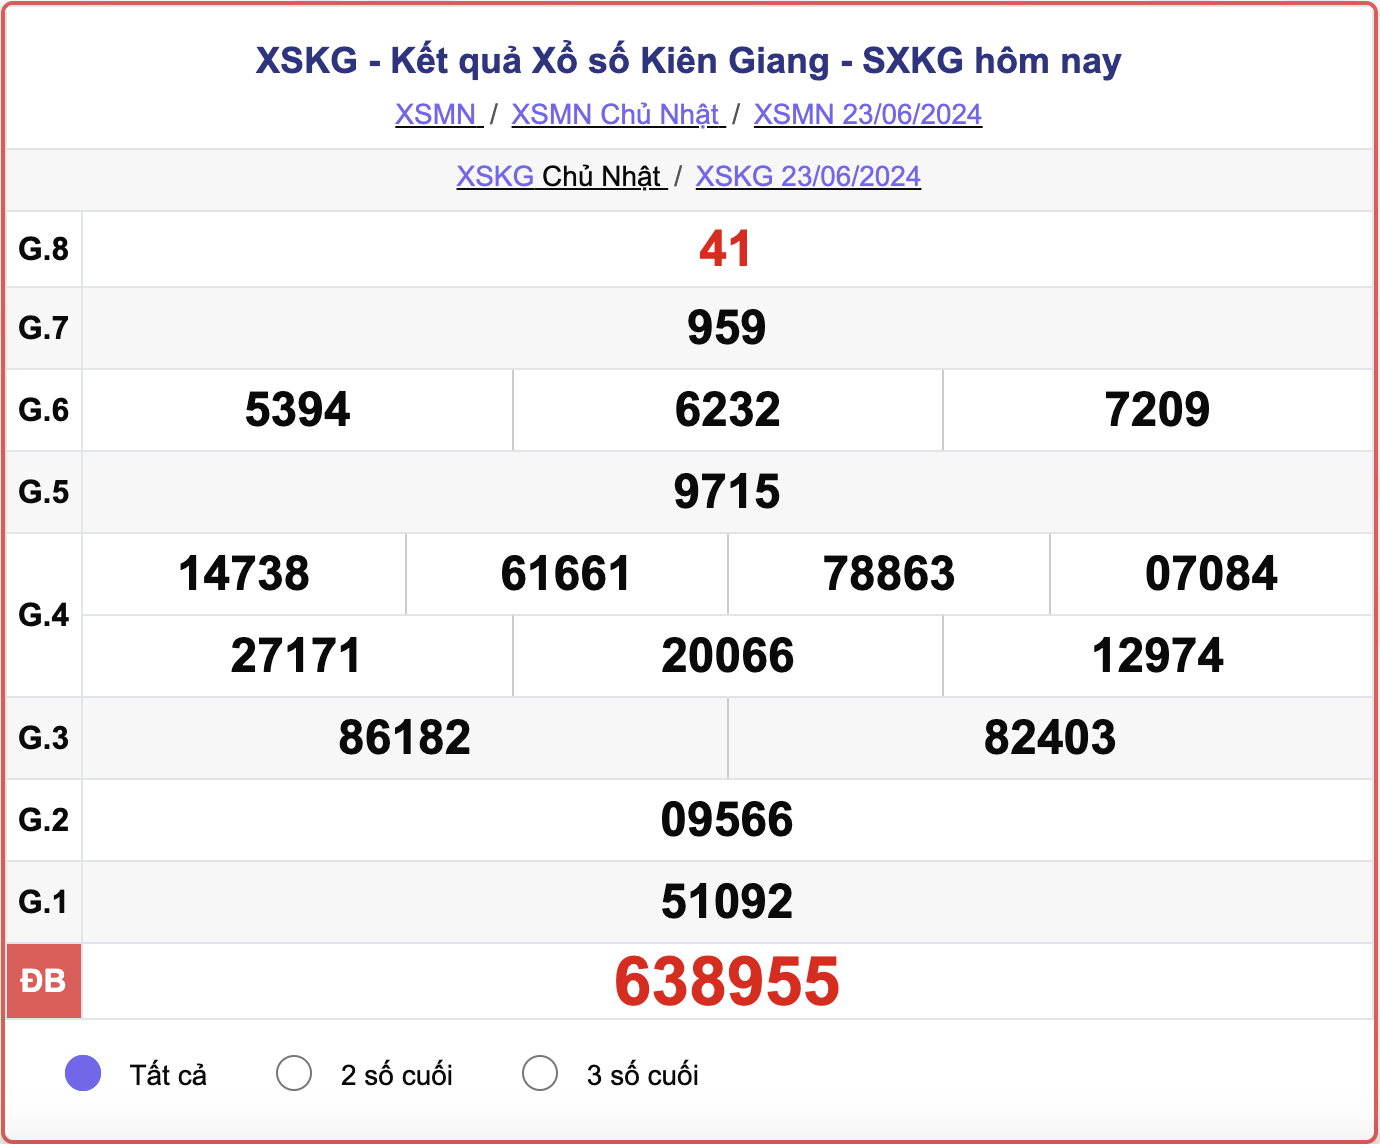 XSKG 23/6, kết quả xổ số Kiên Giang hôm nay 23/6/2024.